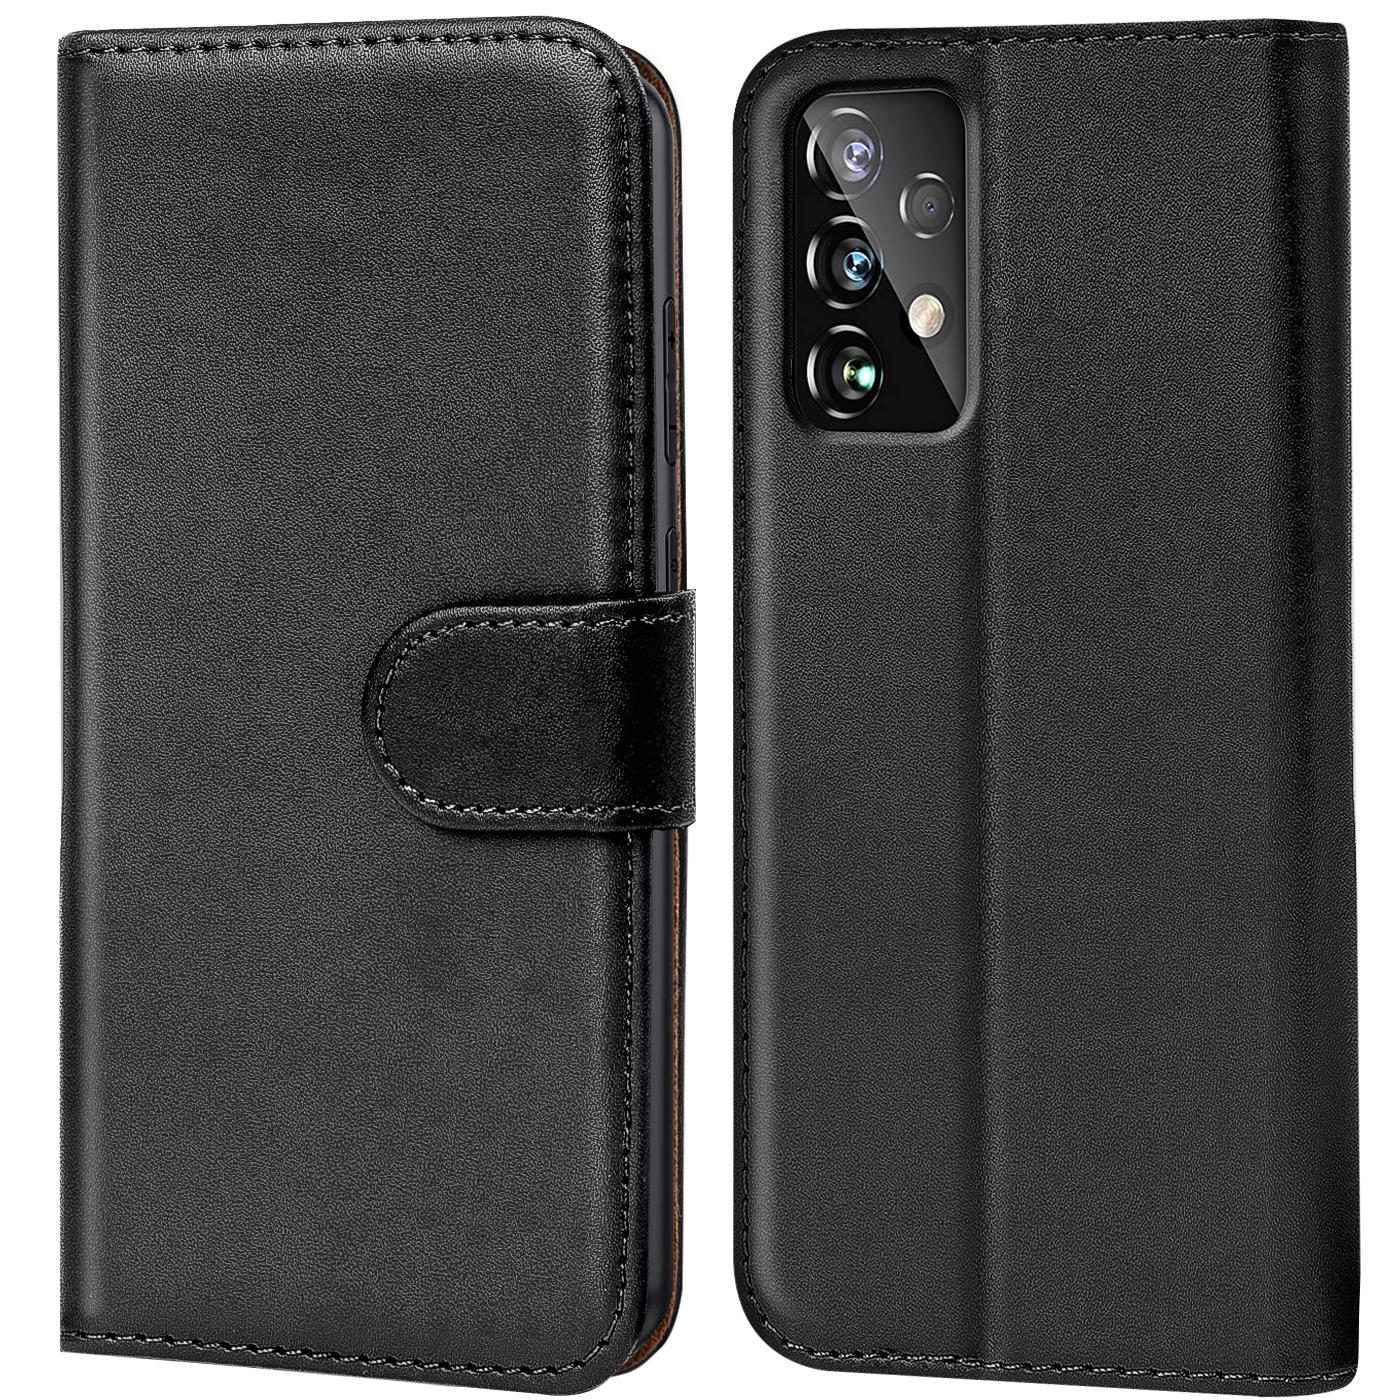 Indexbild 2 - Schutzhülle für Samsung Galaxy Handy Tasche Slim Flip Case Book Cover Wallet